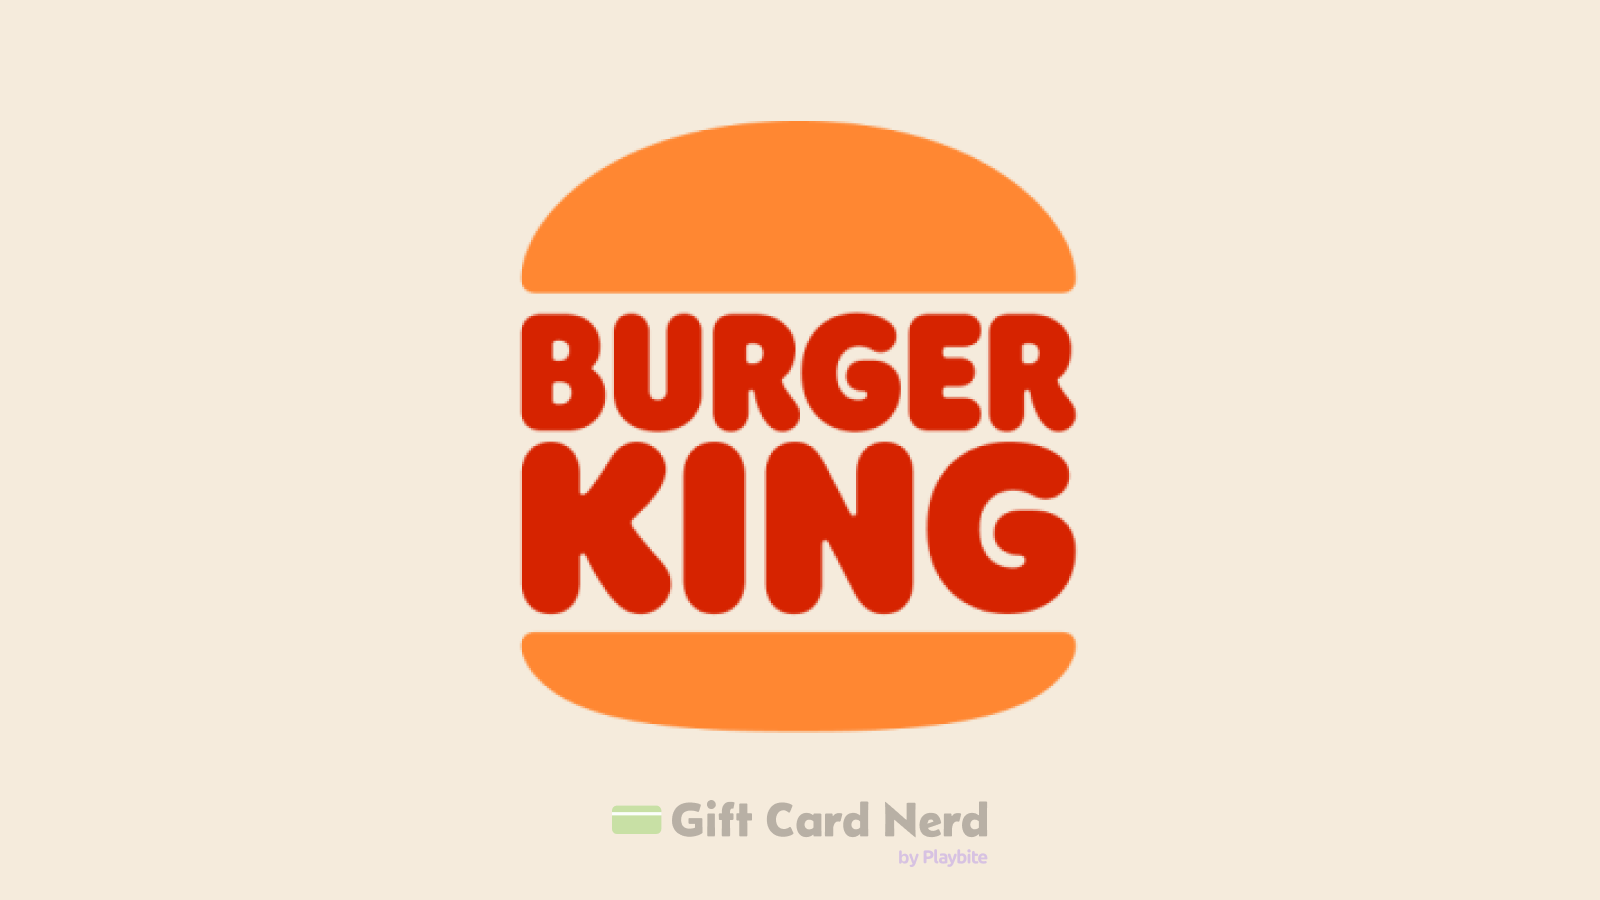 Can You Buy Burger King Gift Cards at Walgreens?